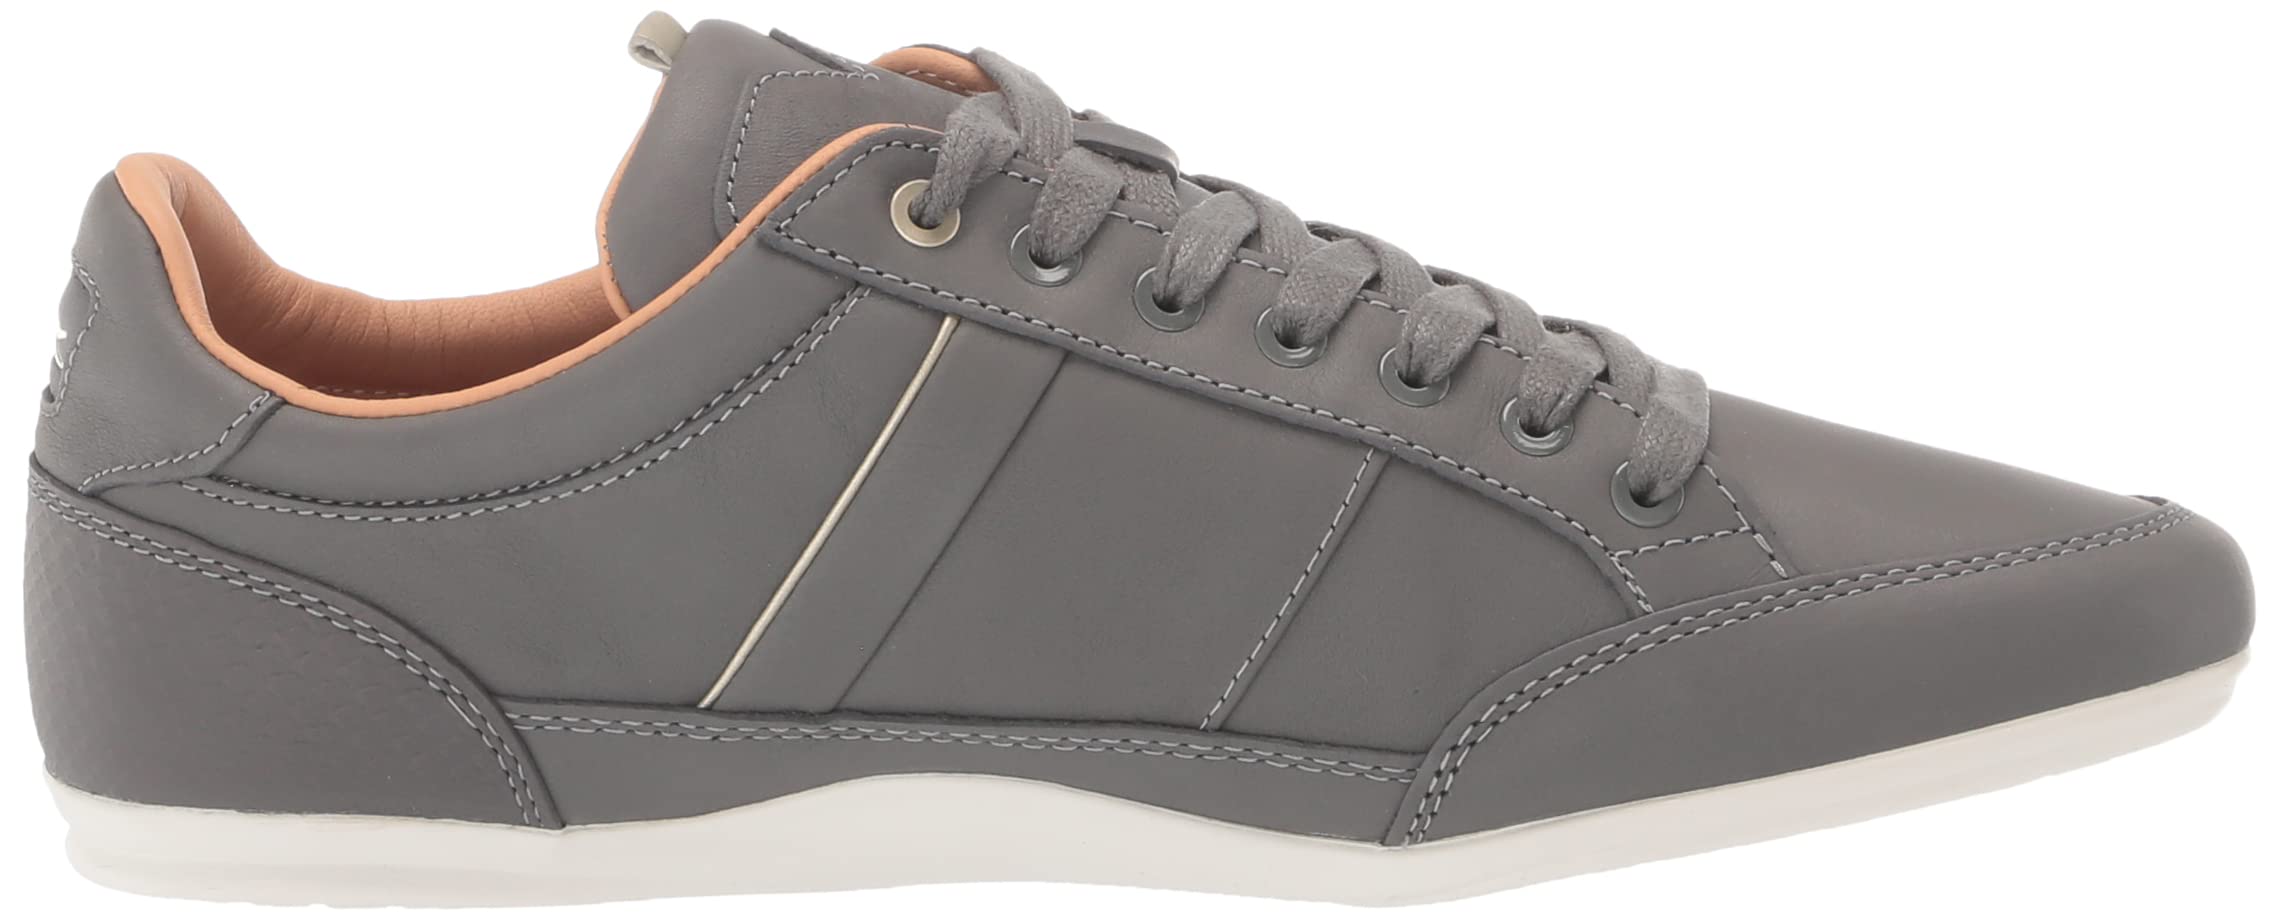 Lacoste Men Chaymon Legacy Sneaker Lace Up Dark Gray White 42CMA0010 Size 9.5 13